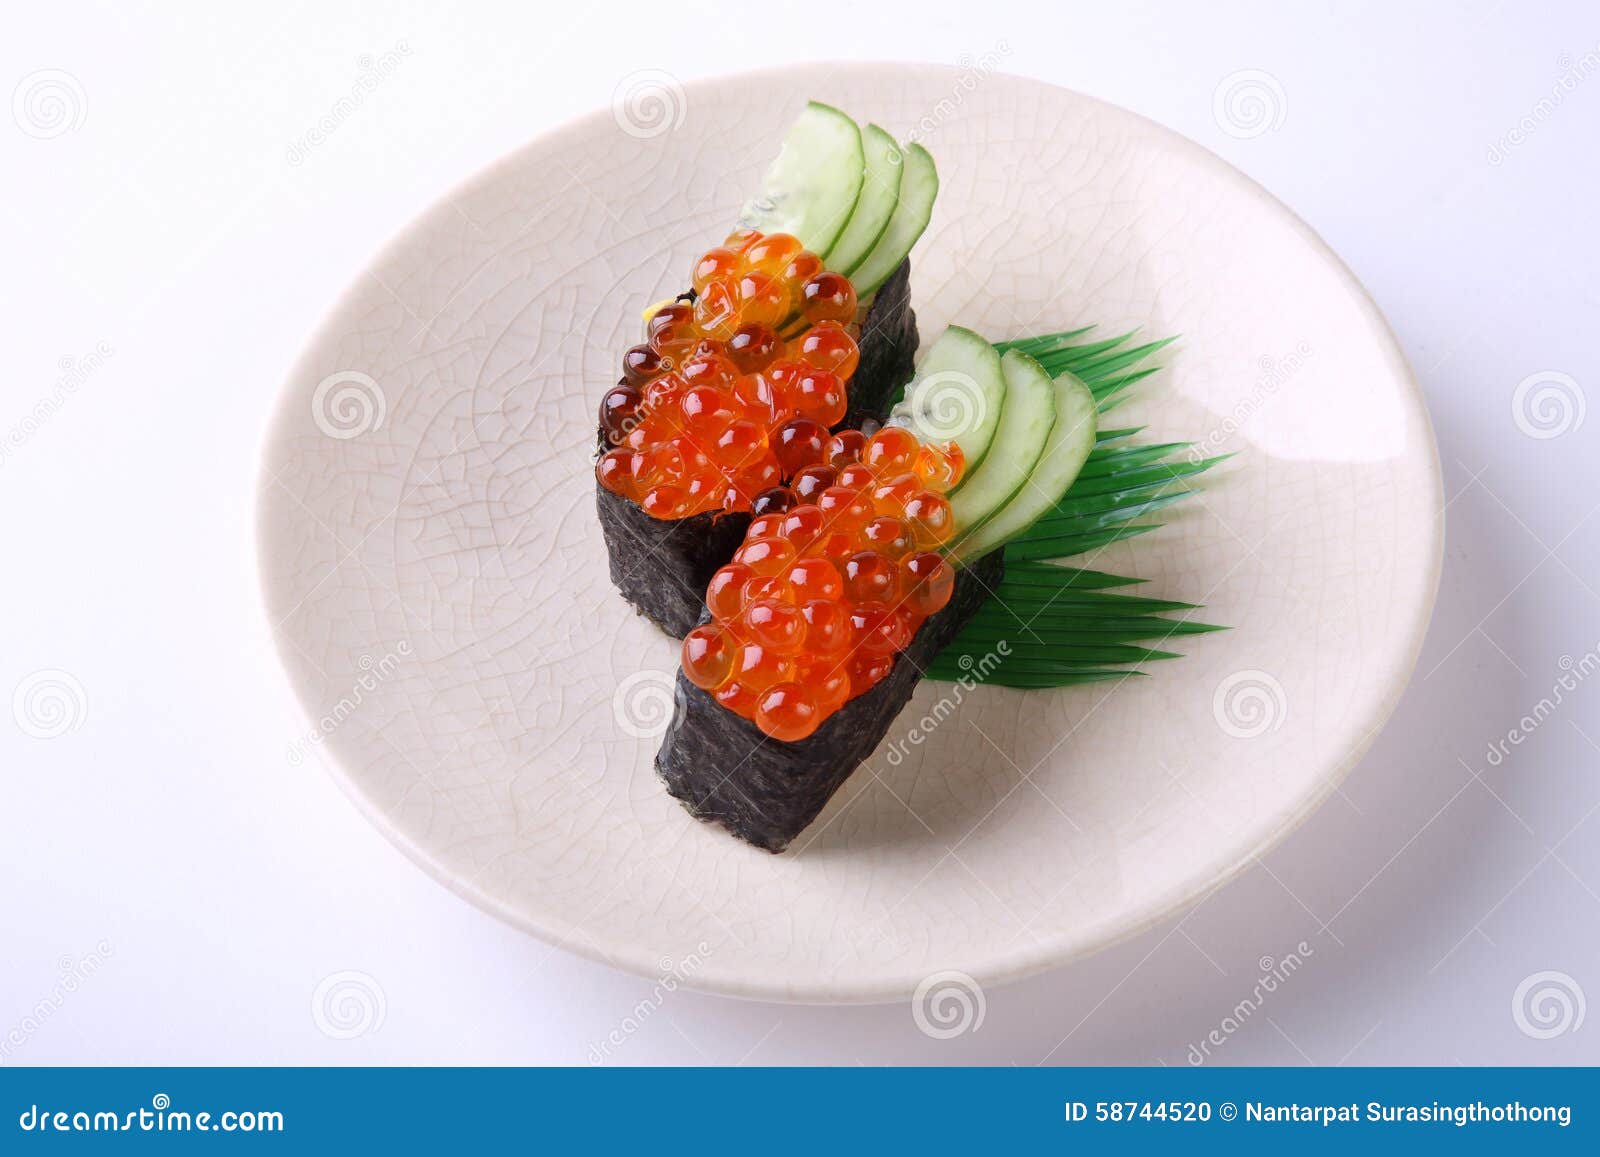 Ikura Nigiri Sushi, Salmon Roe with Sushi Rice and Seaweed on Wh